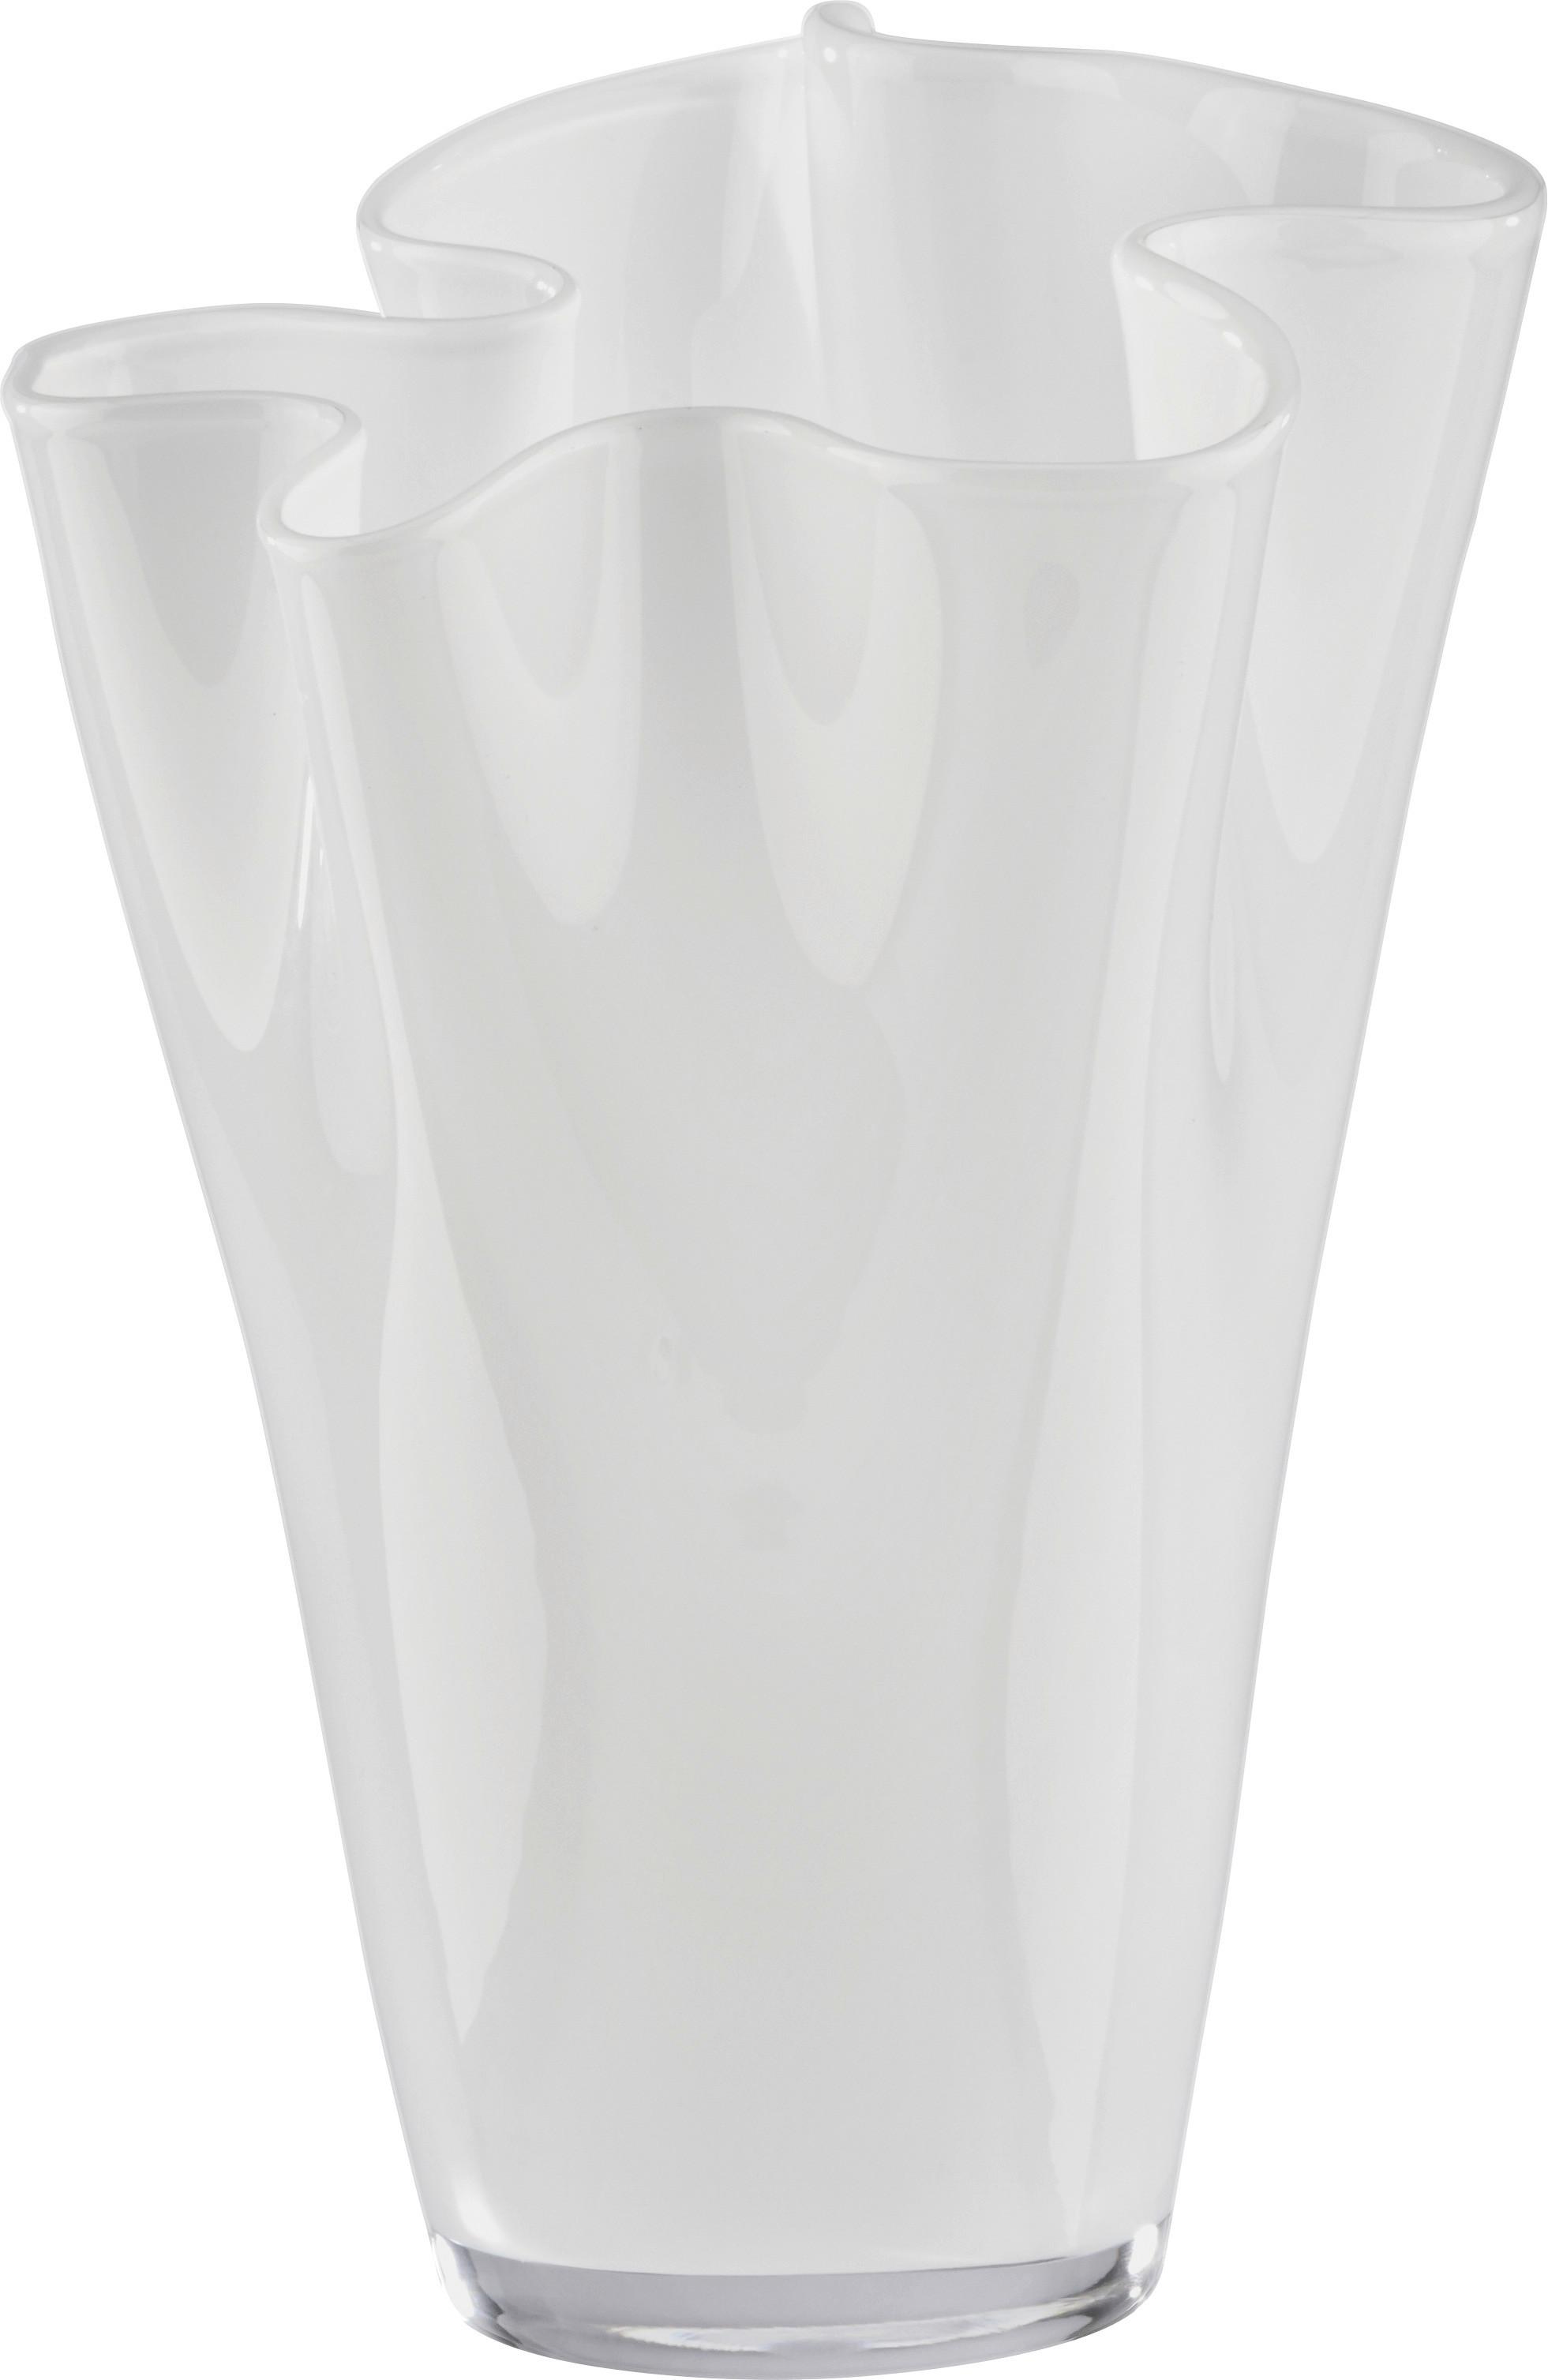 Váza Anika - bílá, Moderní, sklo (18/25cm) - Modern Living